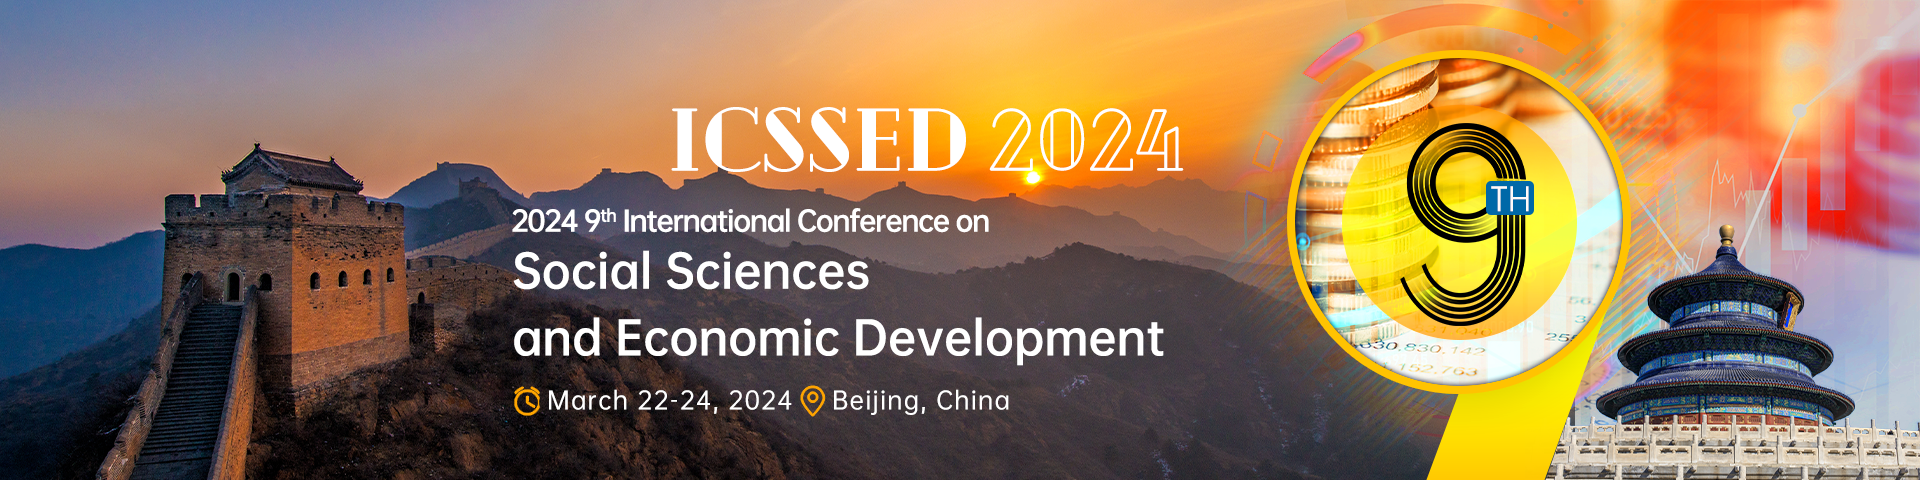 3月-北京ICSSED+2024-会议官网英文banner-20231012.png